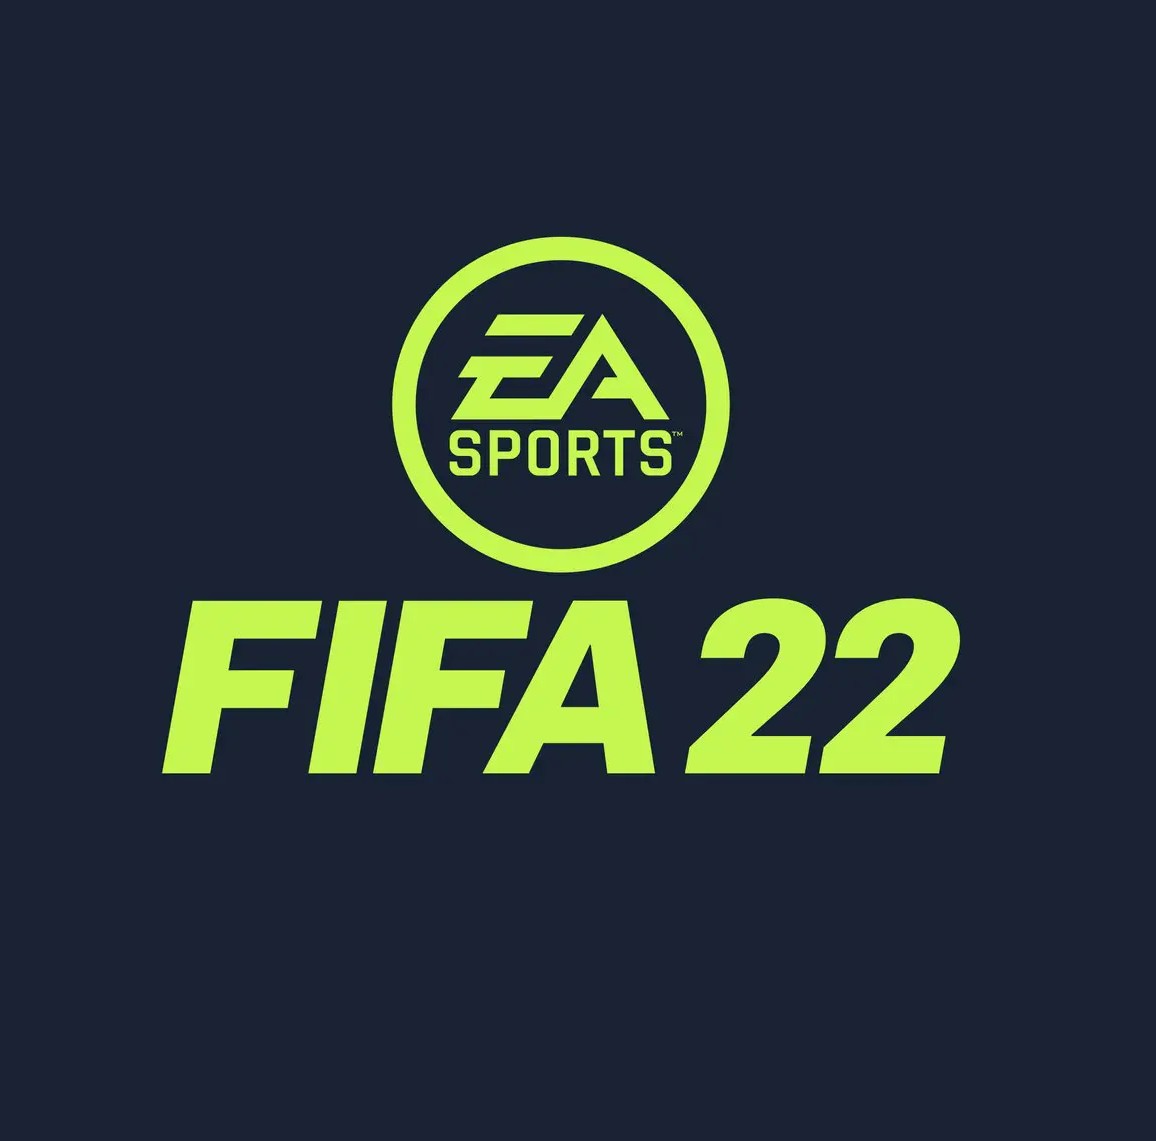 Patrocinadores 2021/22 e Ingreso de Dinero - Página 2 Fifa-22-logomarca